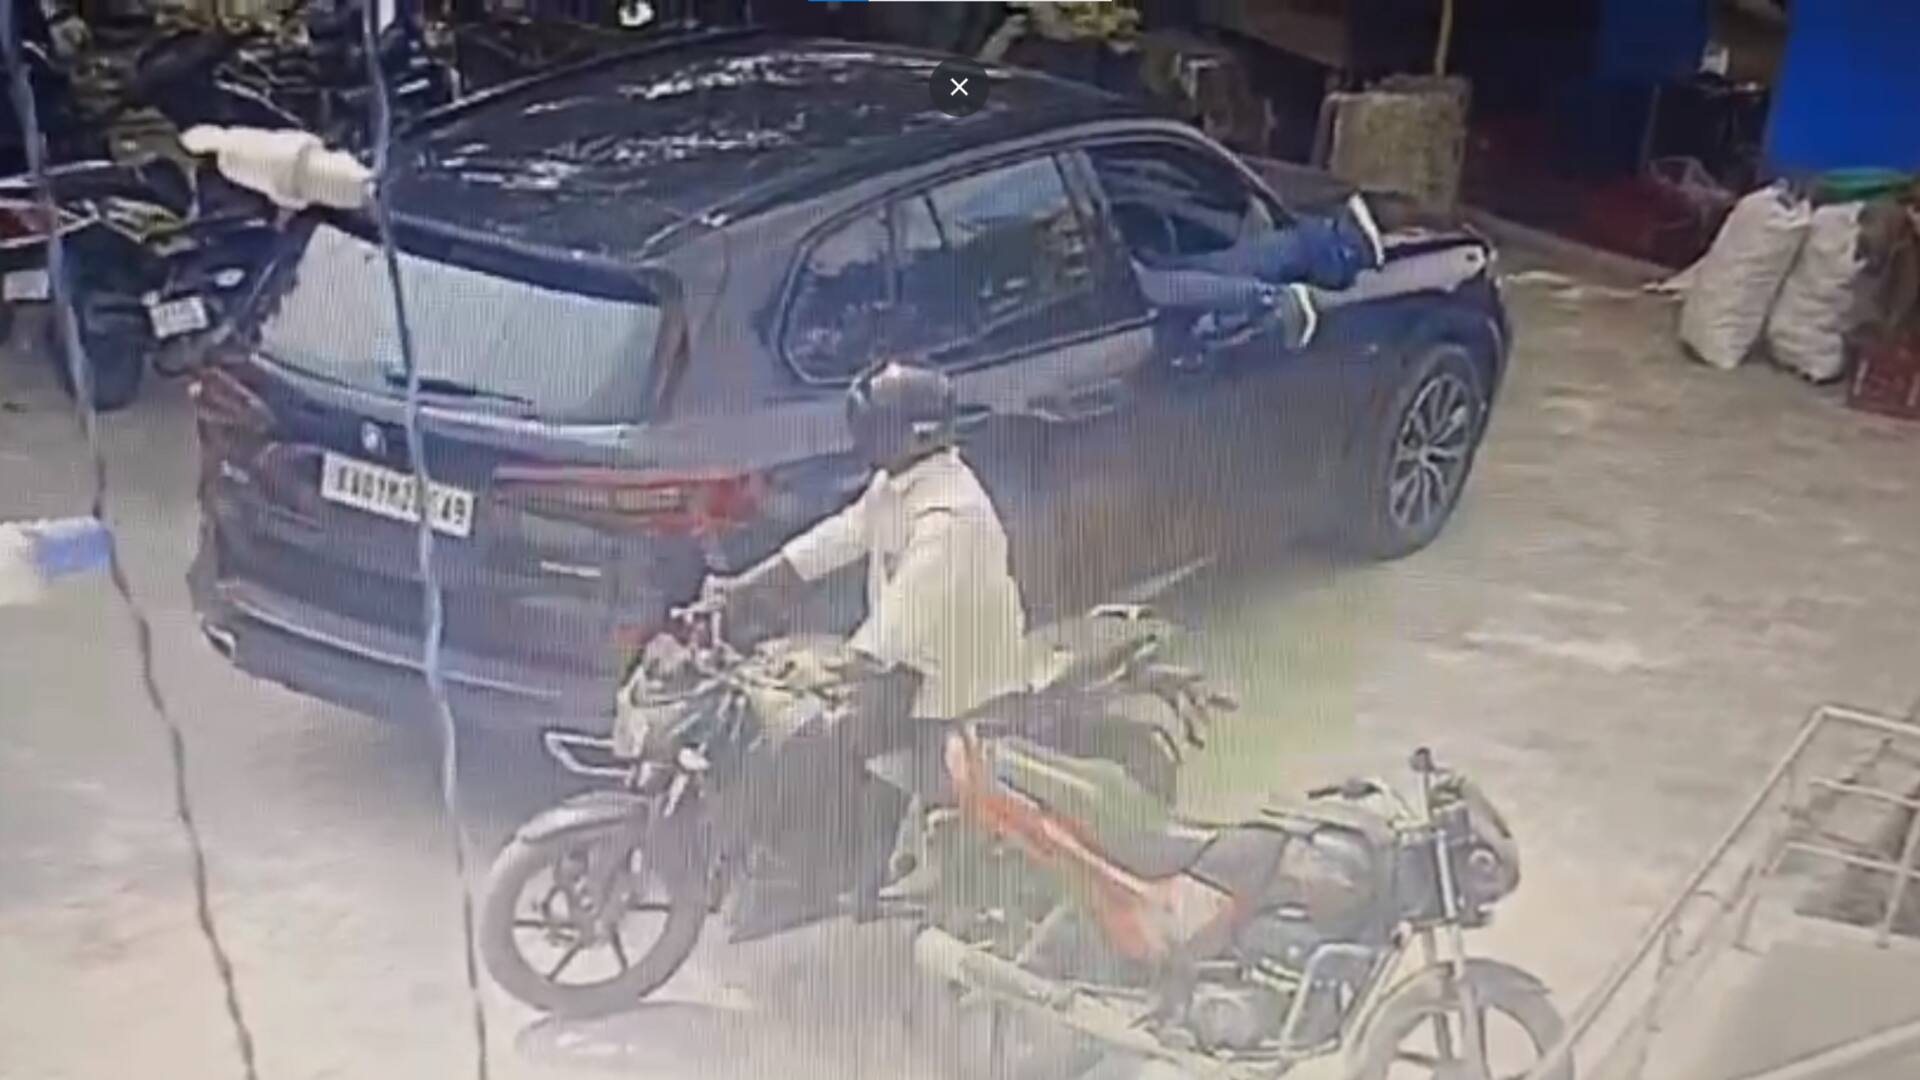 வீடியோ: பட்டப்பகலில் BMW காரின் கண்ணாடியை உடைத்து 13 லட்சம் ரூபாய் பணத்தை கொள்ளையடித்த திருடர்கள்